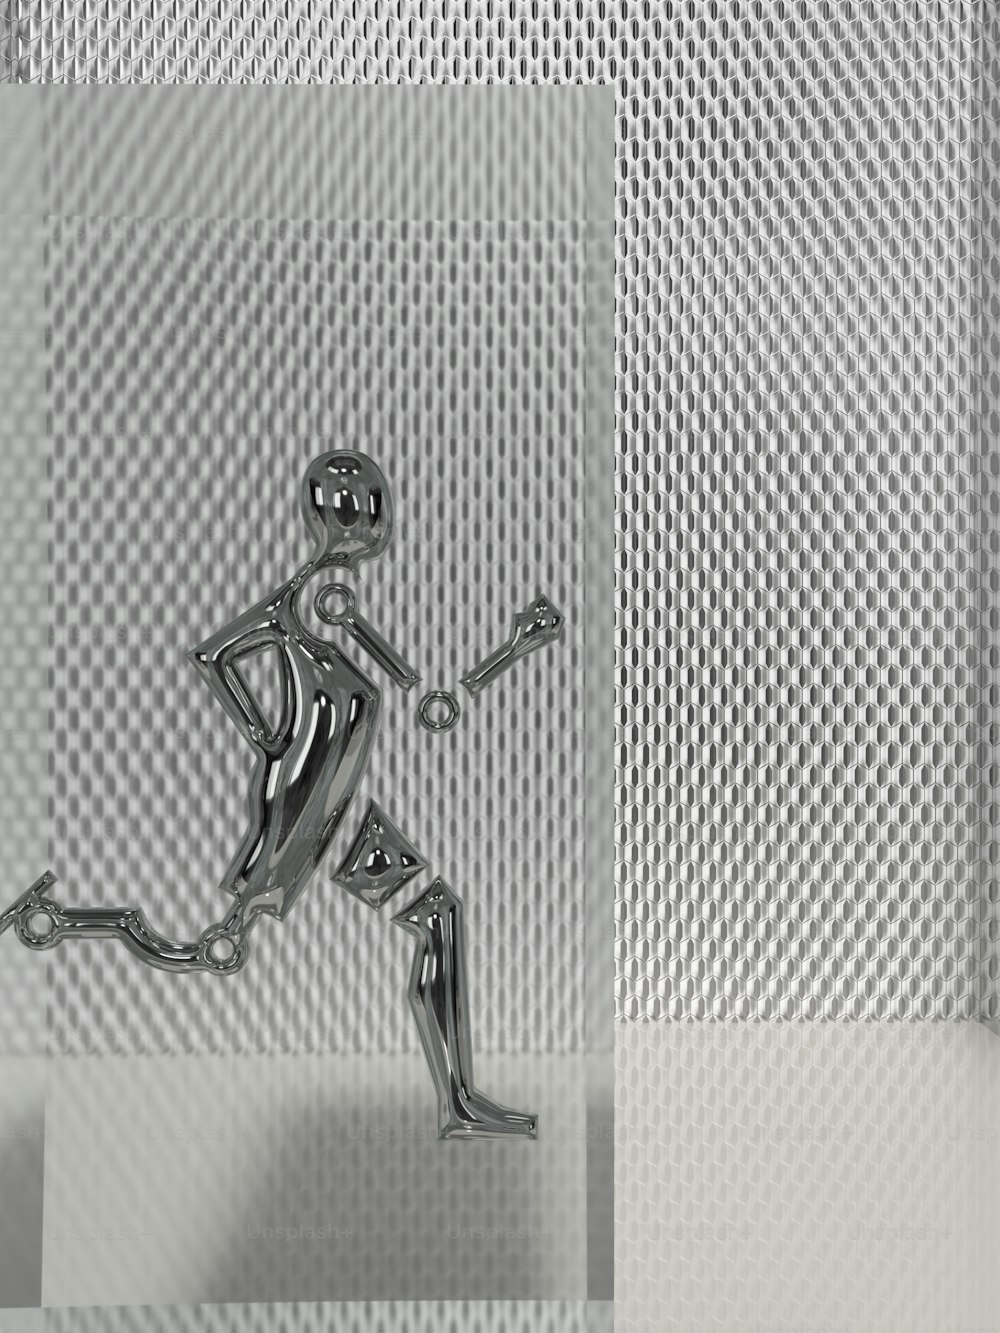 Una figura de metal se ejecuta sobre un fondo blanco